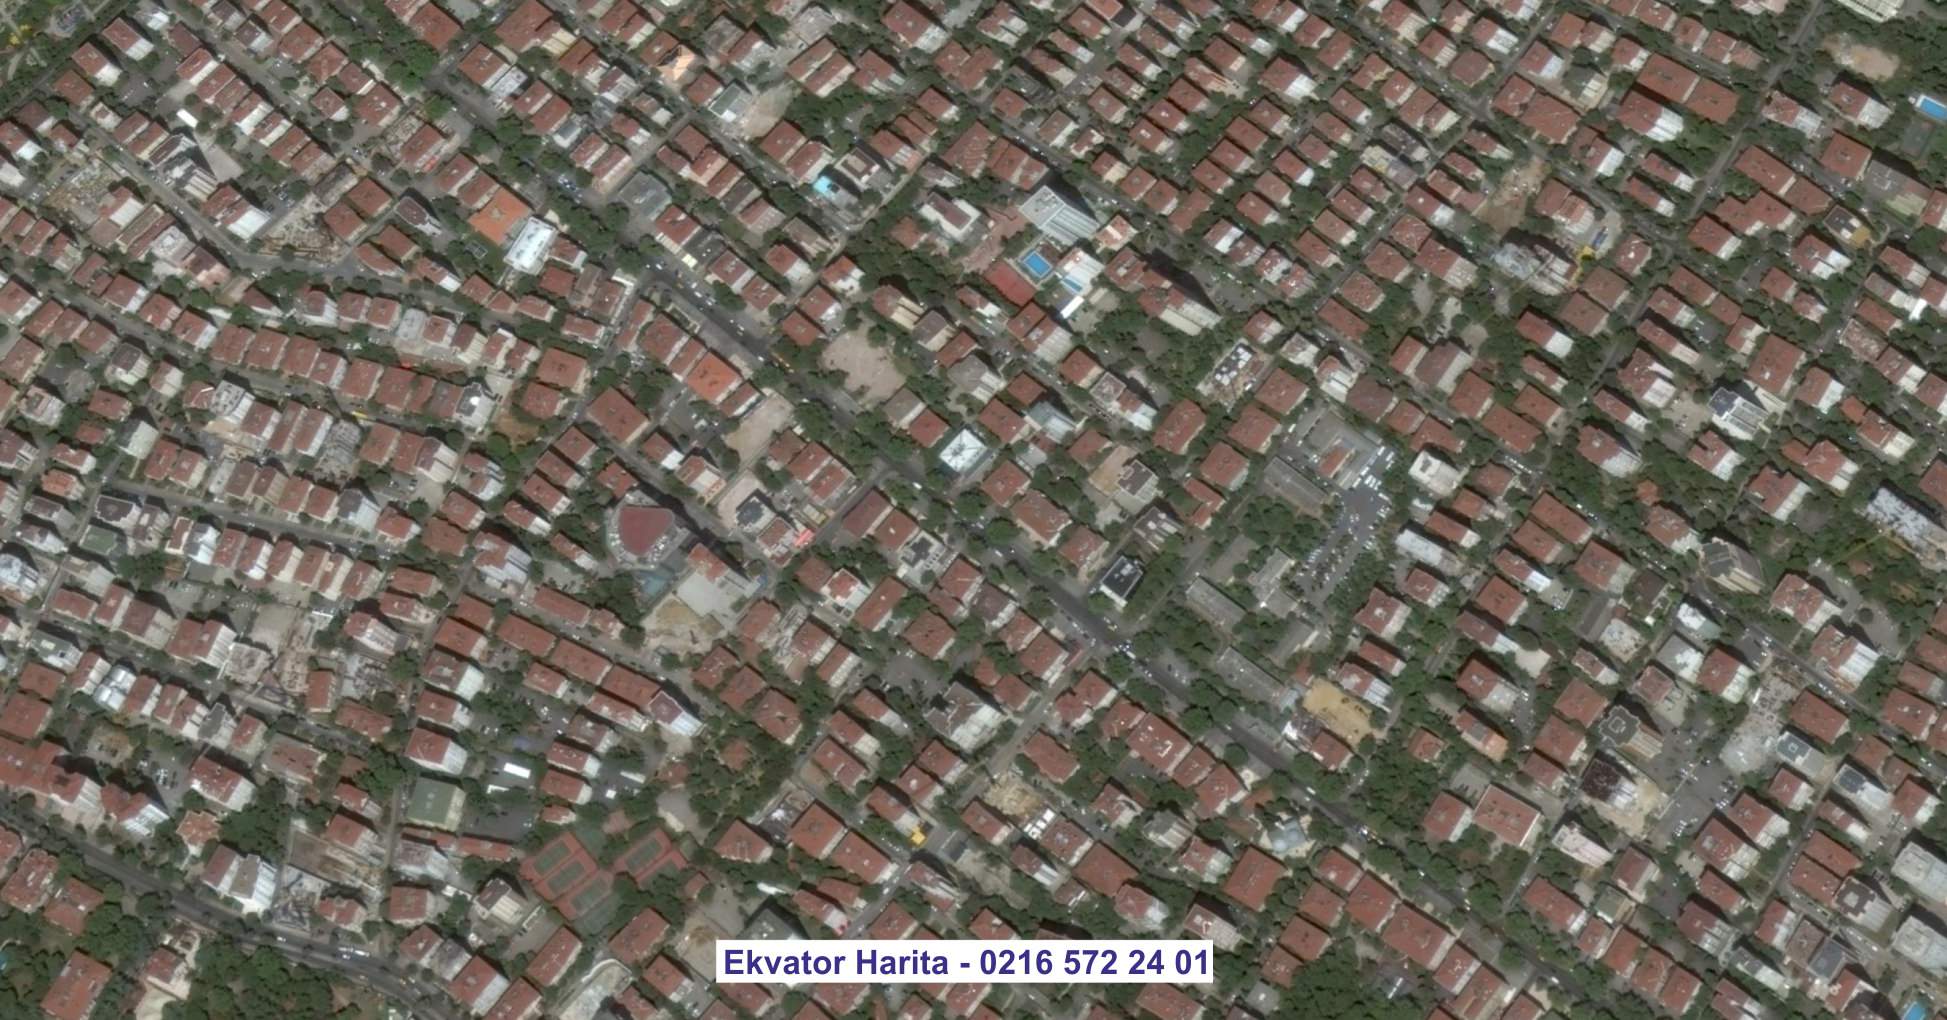 Hatay Uydu Görüntüsü Örnek Fotoğrafı